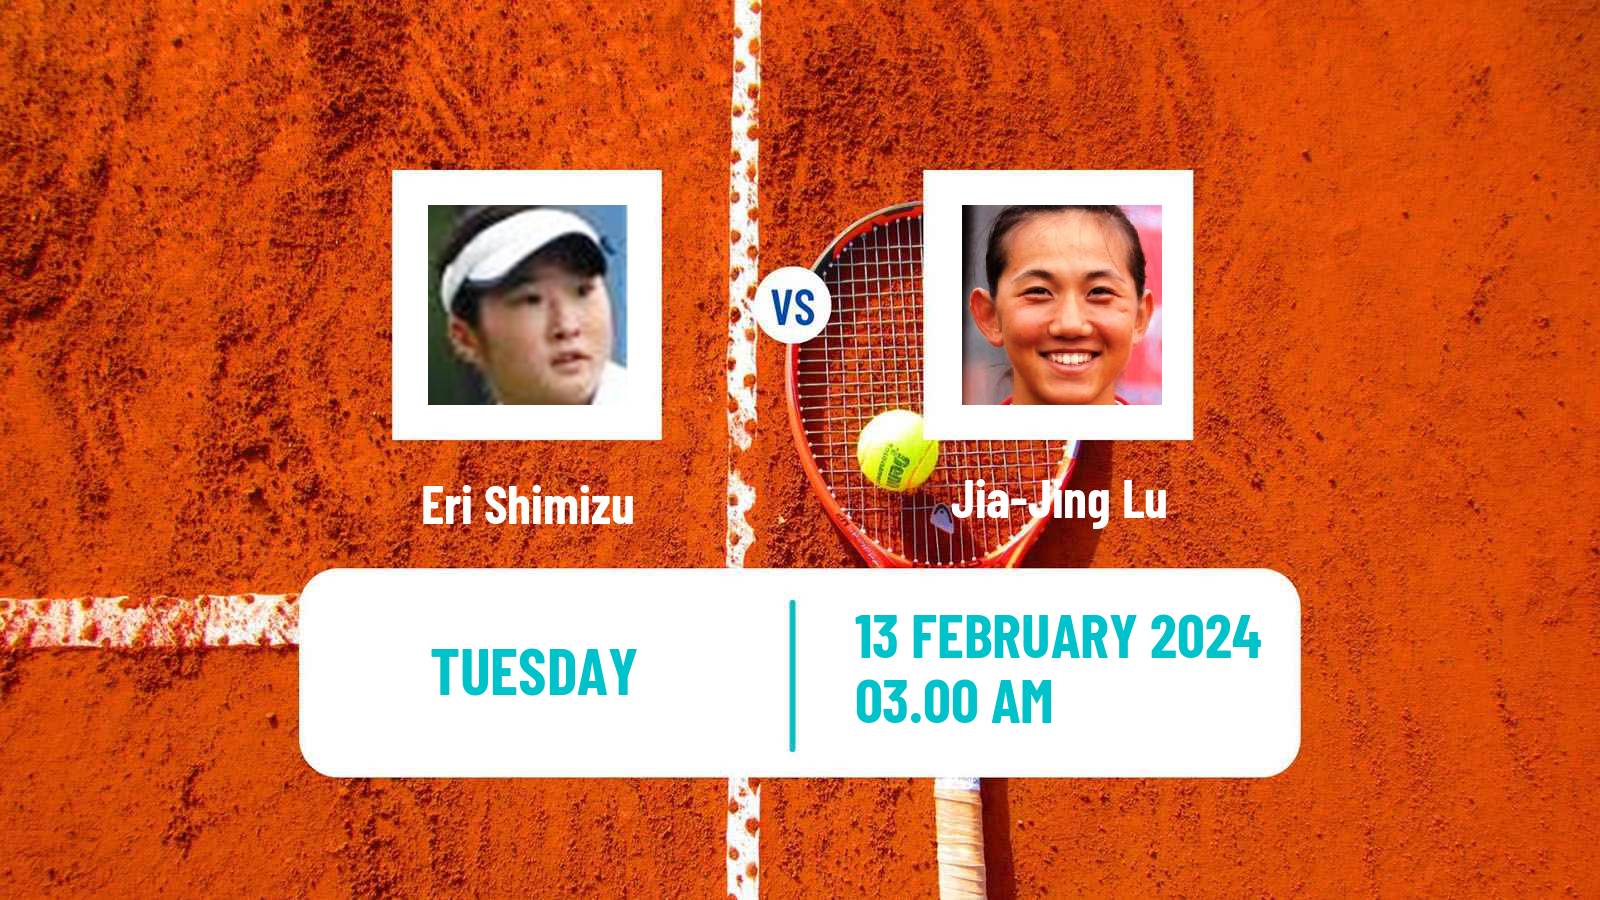 Tennis ITF W35 Nakhon Si Thammarat Women Eri Shimizu - Jia-Jing Lu